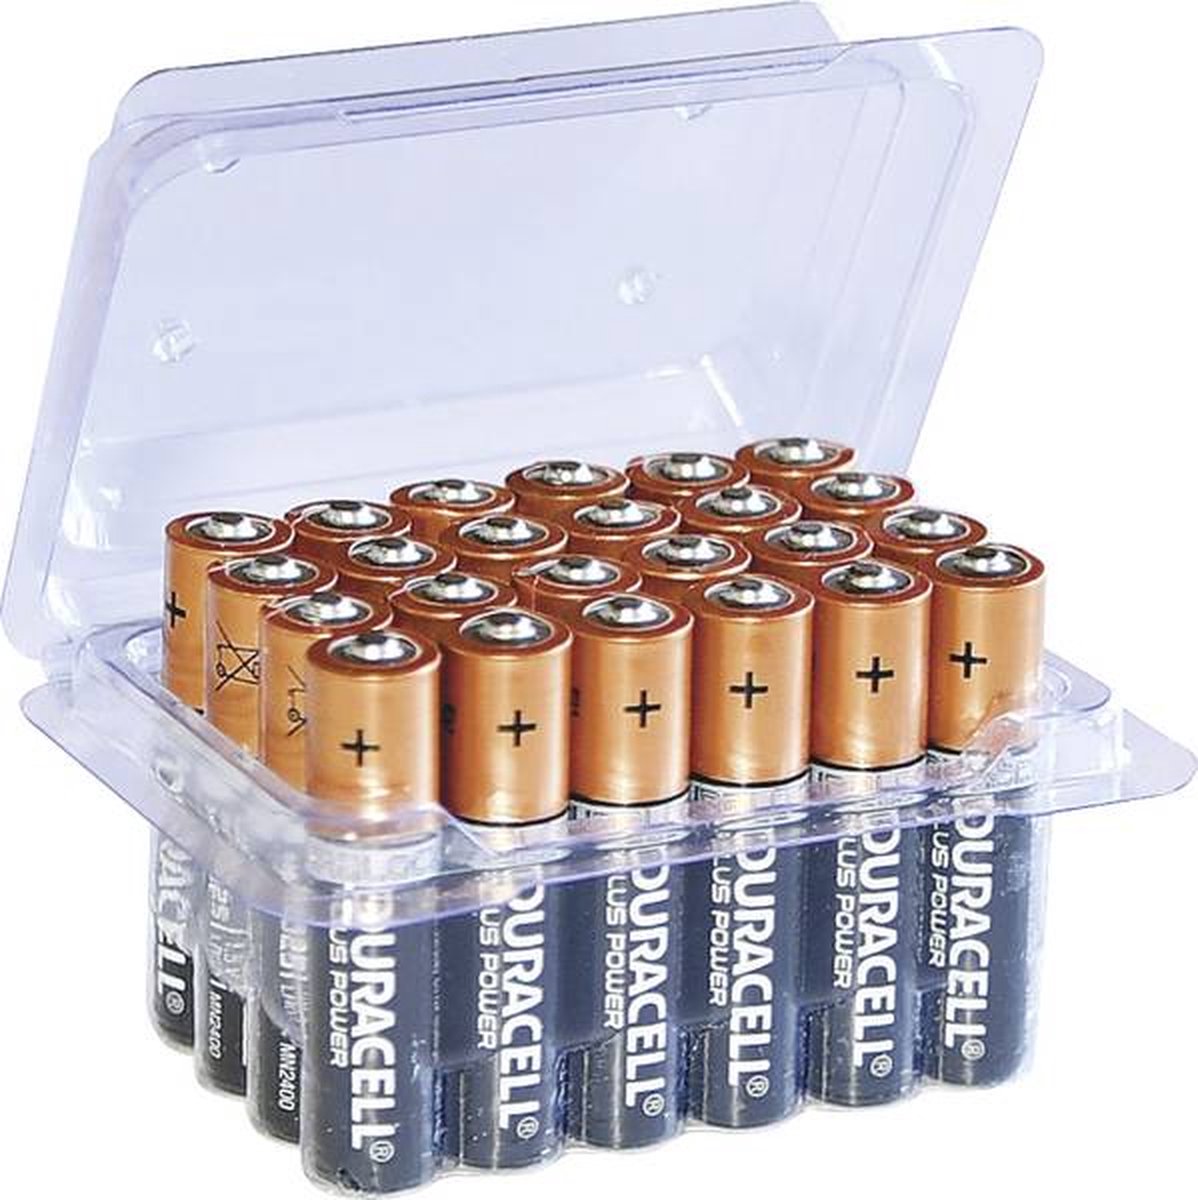 Soldaat Welkom Ik heb een contract gemaakt Duracell 24 AAA batterijen in box | bol.com